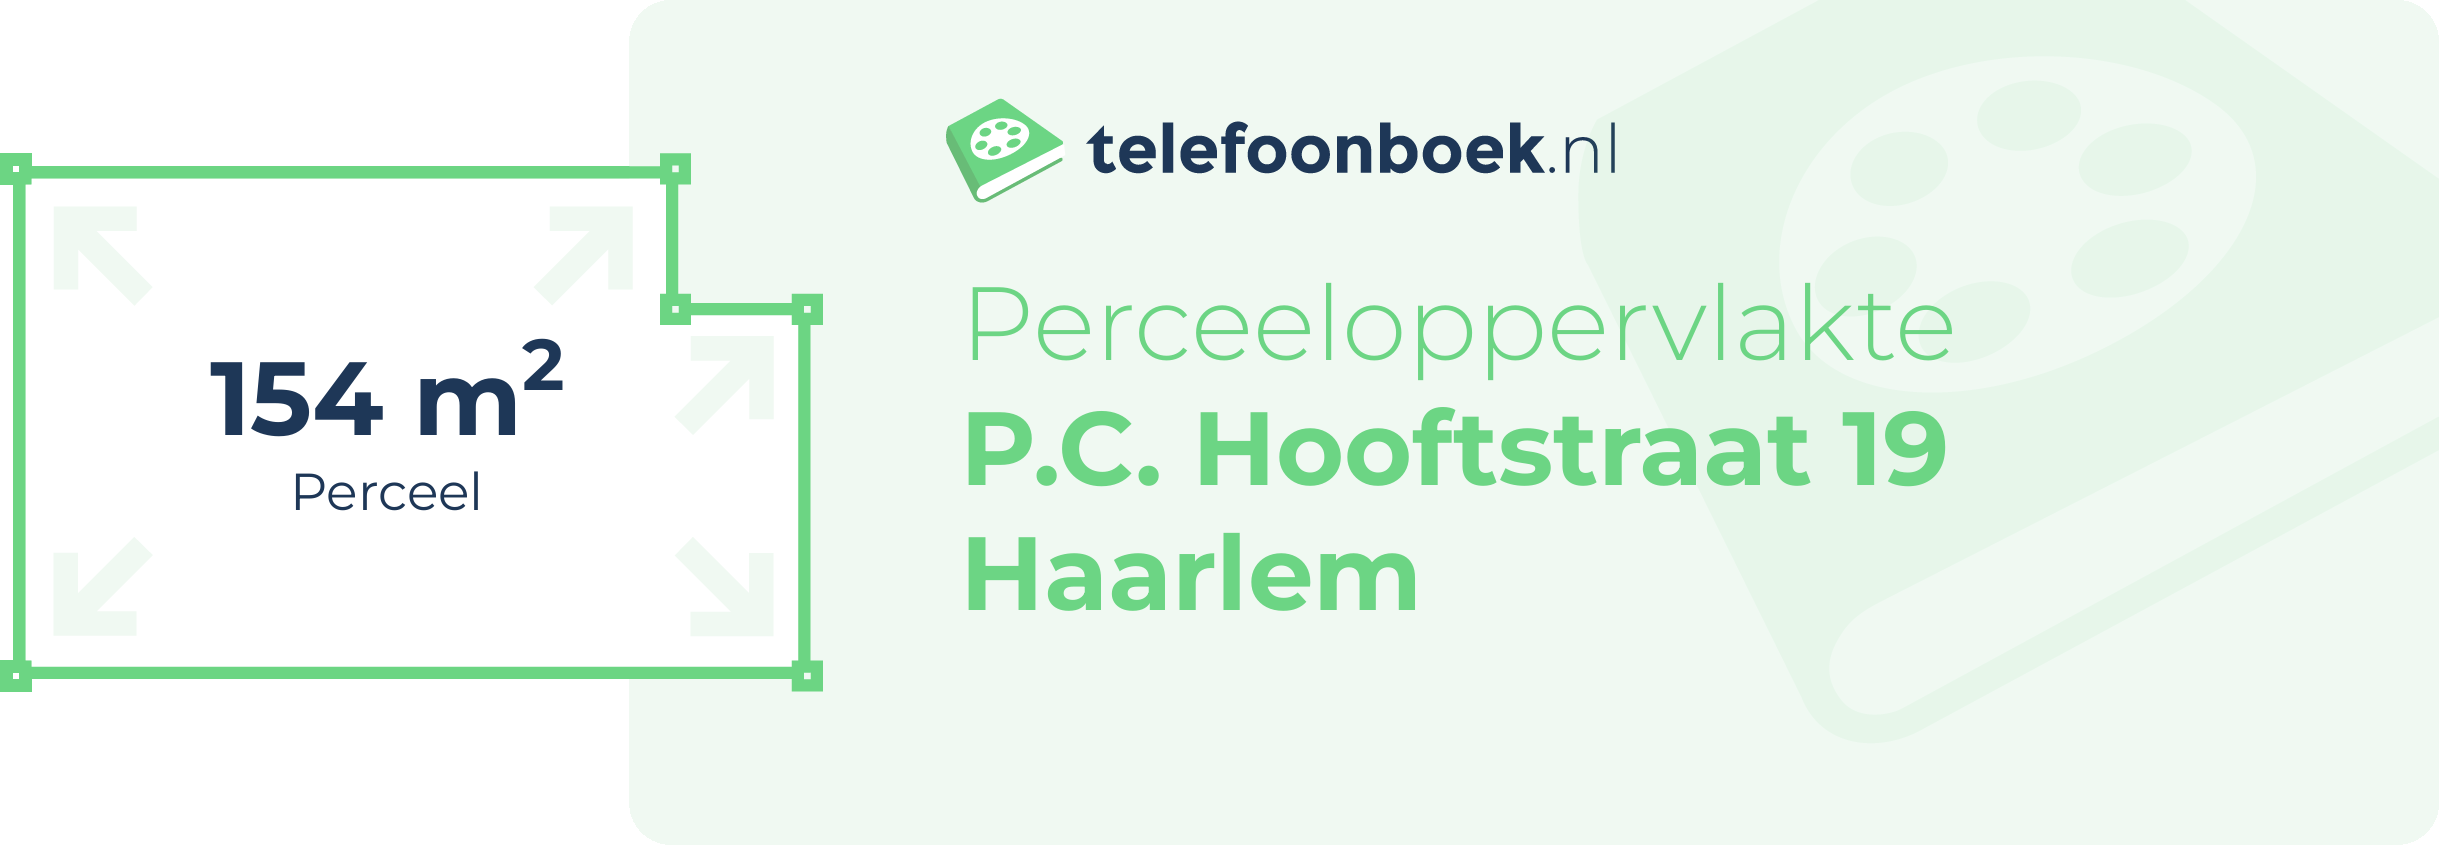 Perceeloppervlakte P.C. Hooftstraat 19 Haarlem